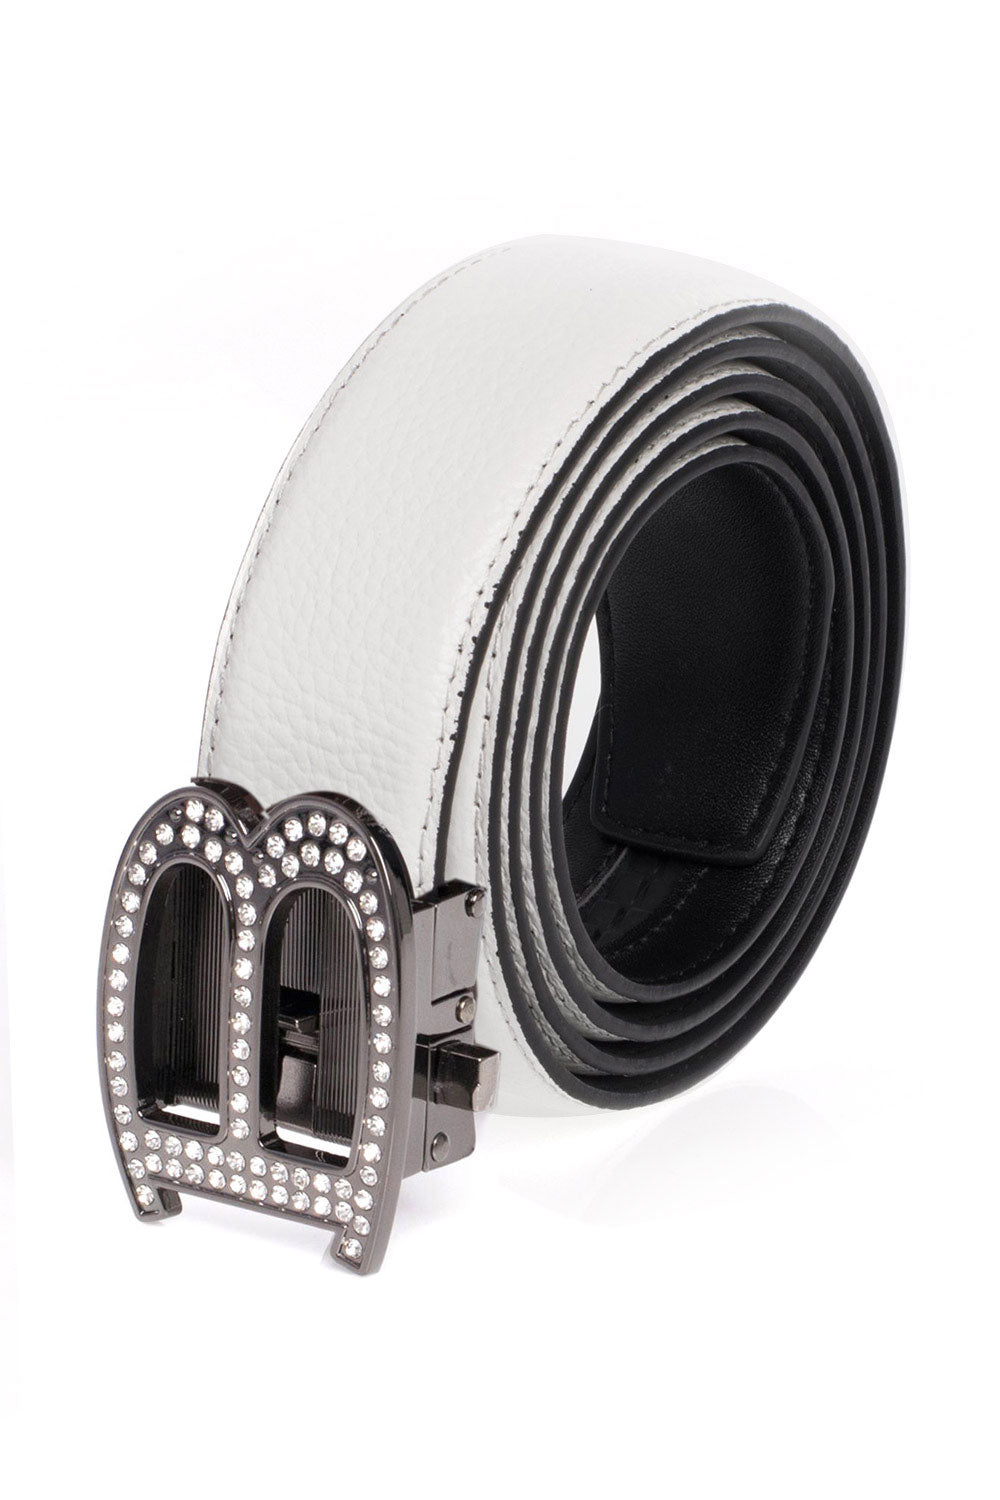 Barabas "B" Shiny Black/White Adjustable Luxury Leather Dress Belt